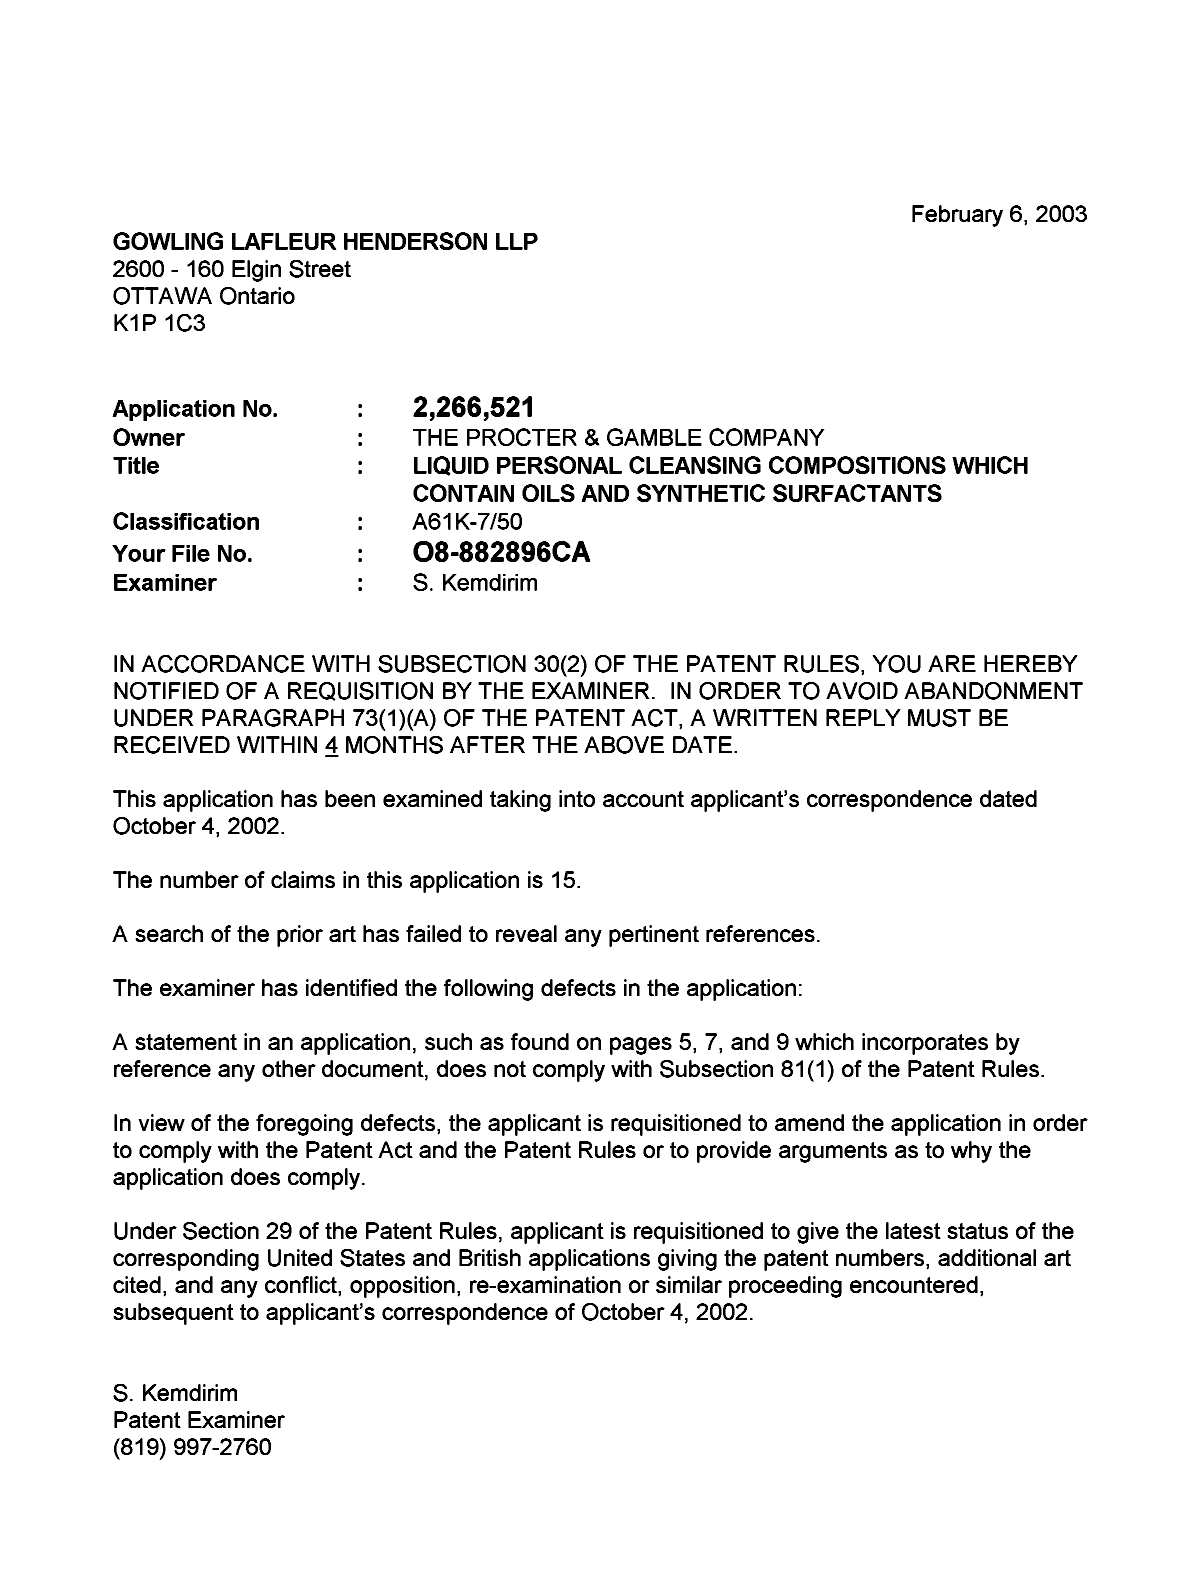 Document de brevet canadien 2266521. Poursuite-Amendment 20030206. Image 1 de 1